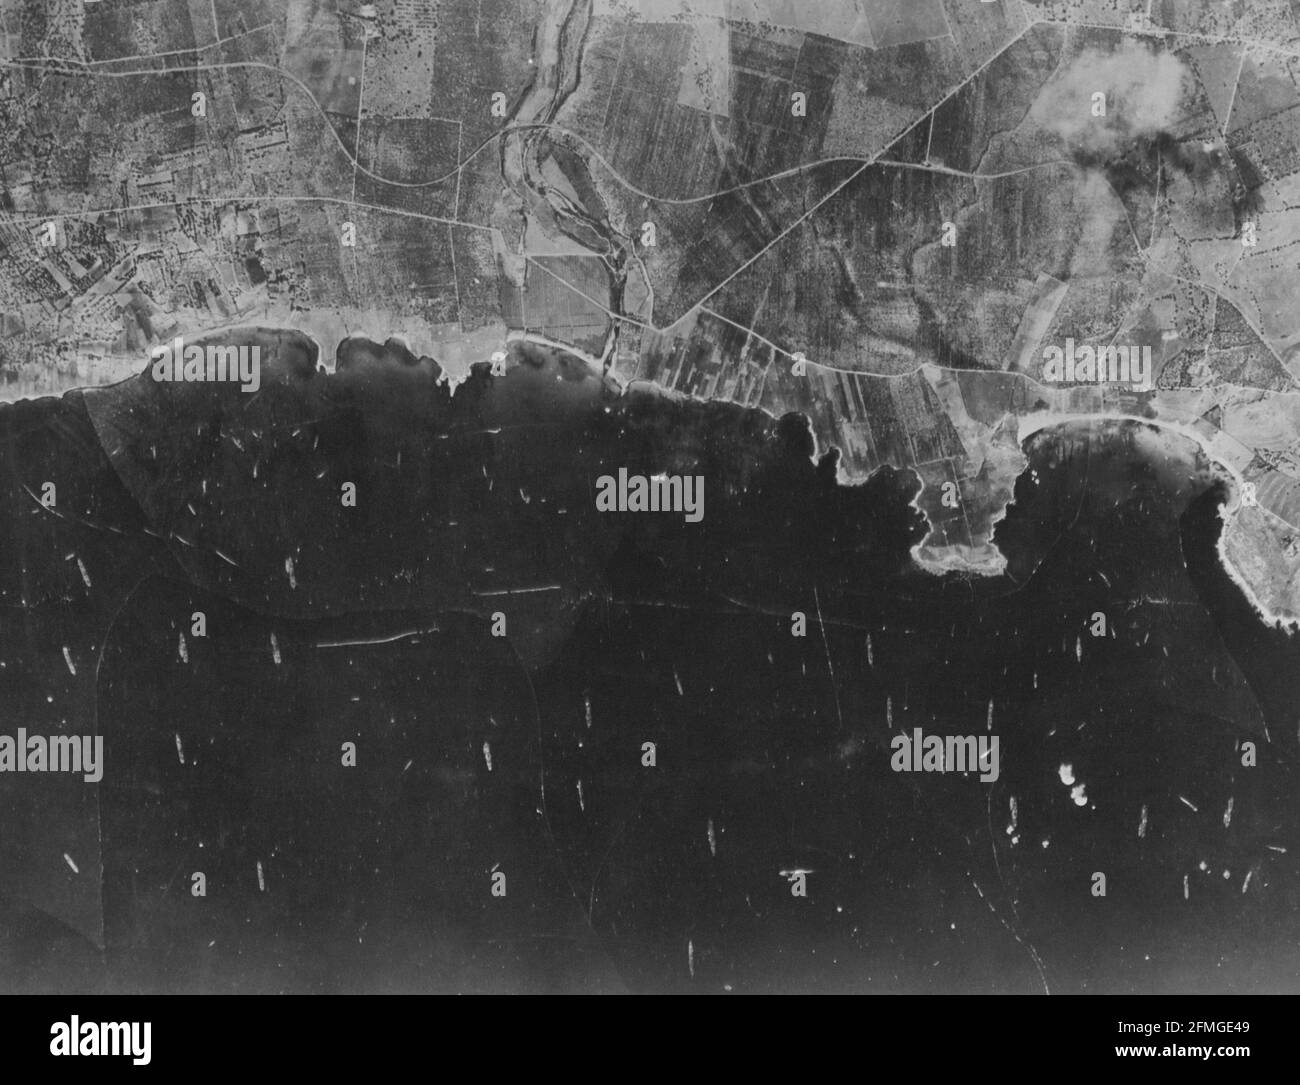 Dieses Bild aus einem fotografischen Aufklärungsflugzeug der US Army Air Forces zeigt einen Teil der südöstlichen sizilianischen Küste, den Tag, an dem die Alliierten einmarschierten. Dutzende unserer Boote sind zu sehen, meist Transporte und Landungsboote. Stockfoto